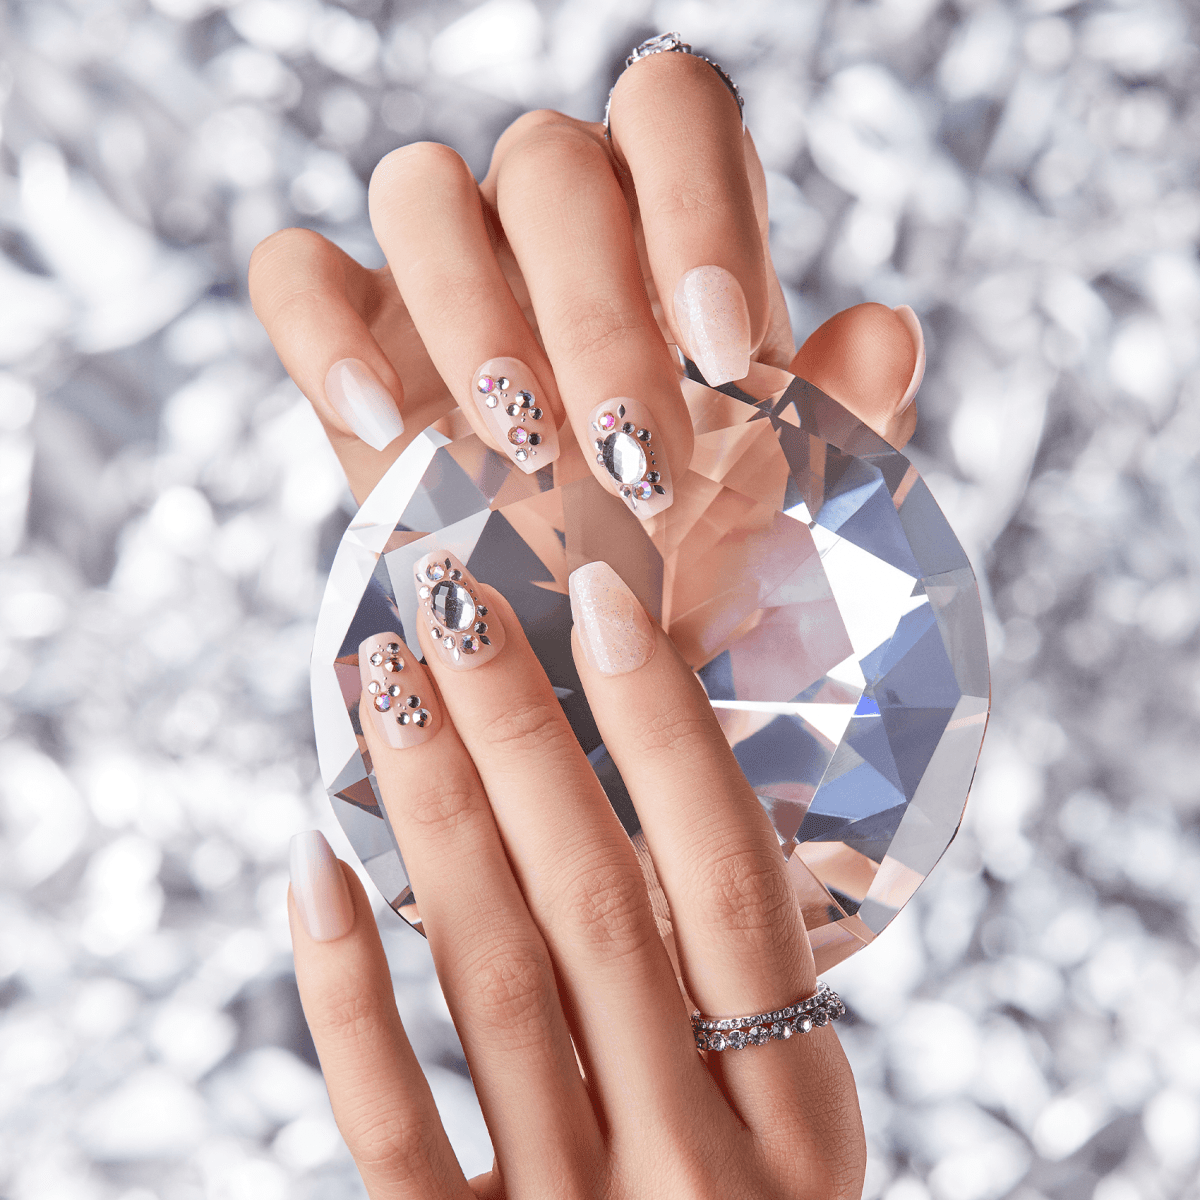 Diamonds for nails  Nail spa, Nails, Nail manicure